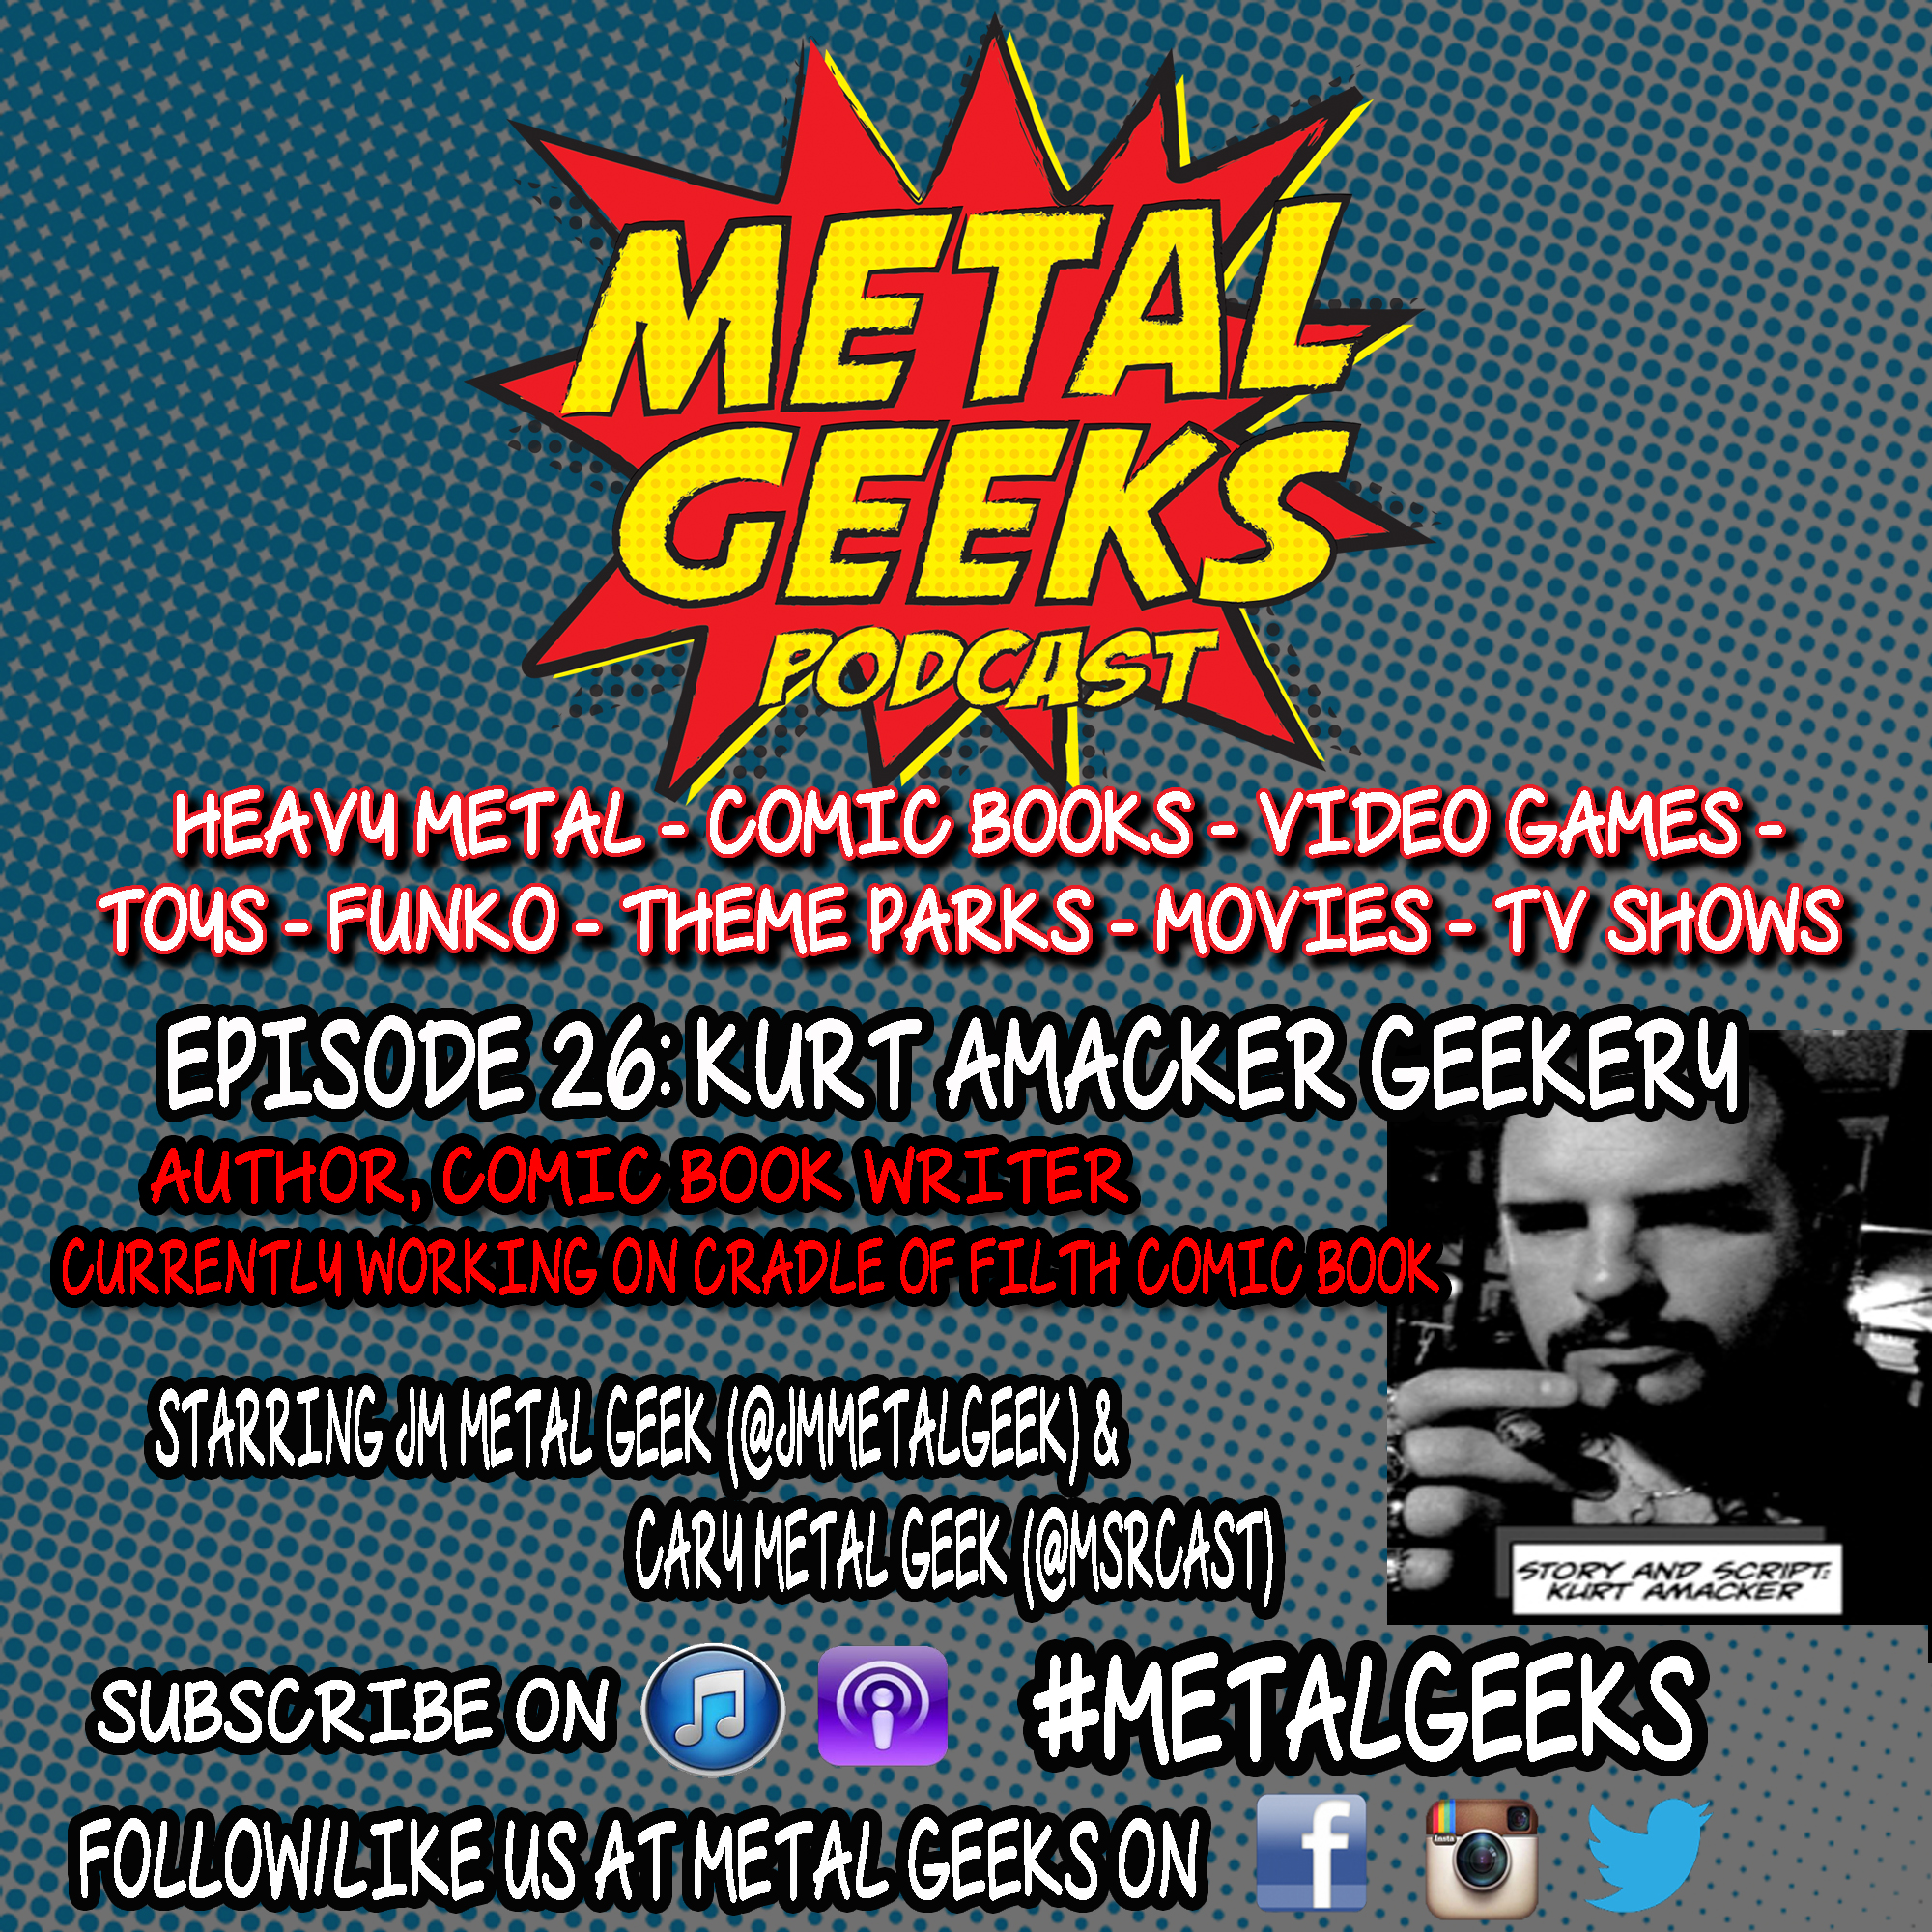 Metal Geeks 26: Kurt Amacker Geekery